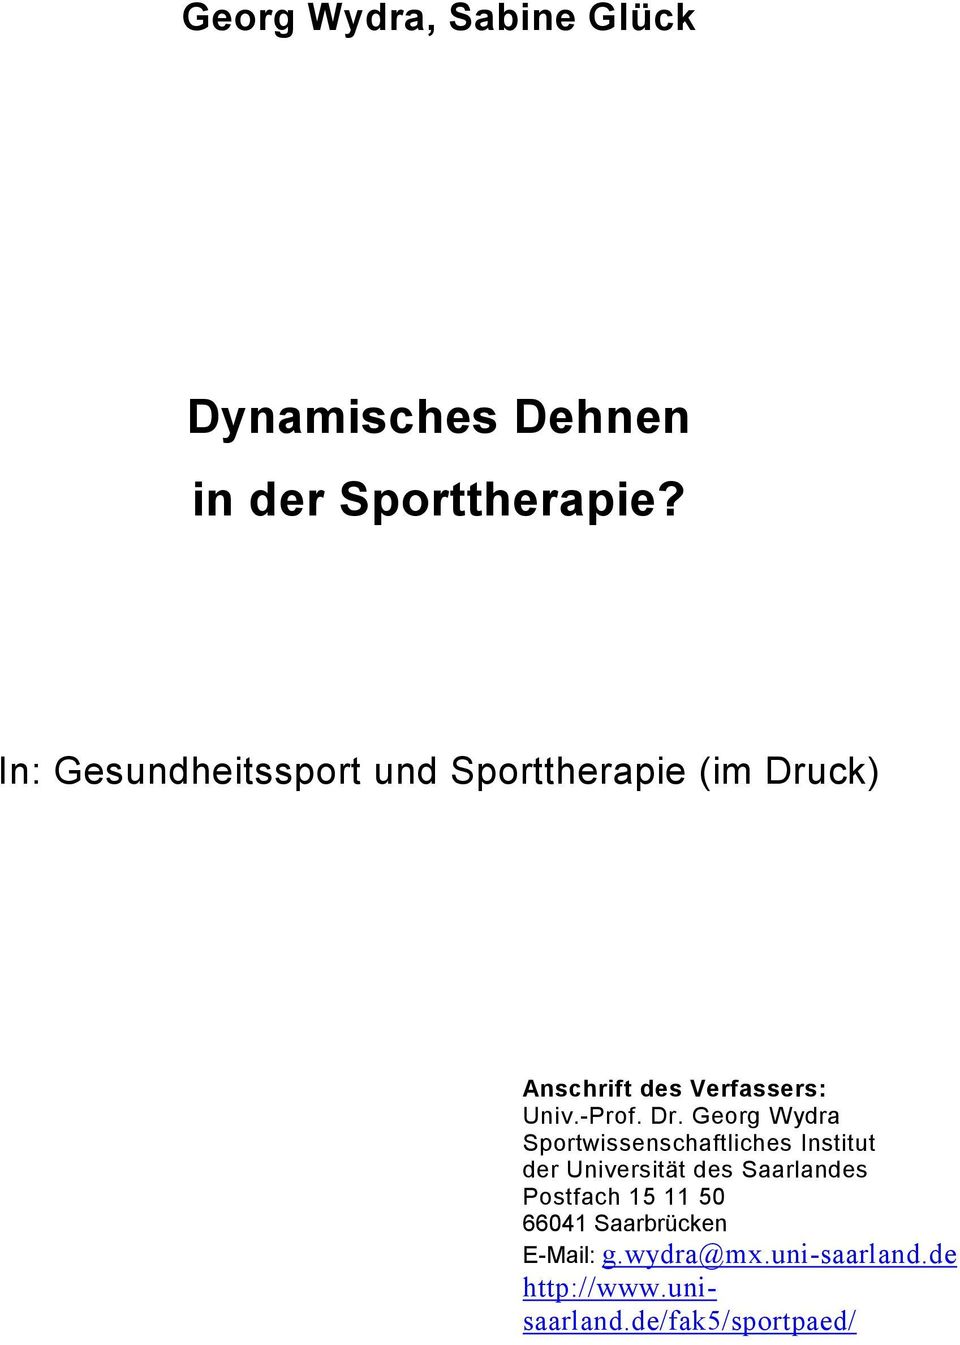 Dr. Georg Wydra Sportwissenschaftliches Institut der Universität des Saarlandes